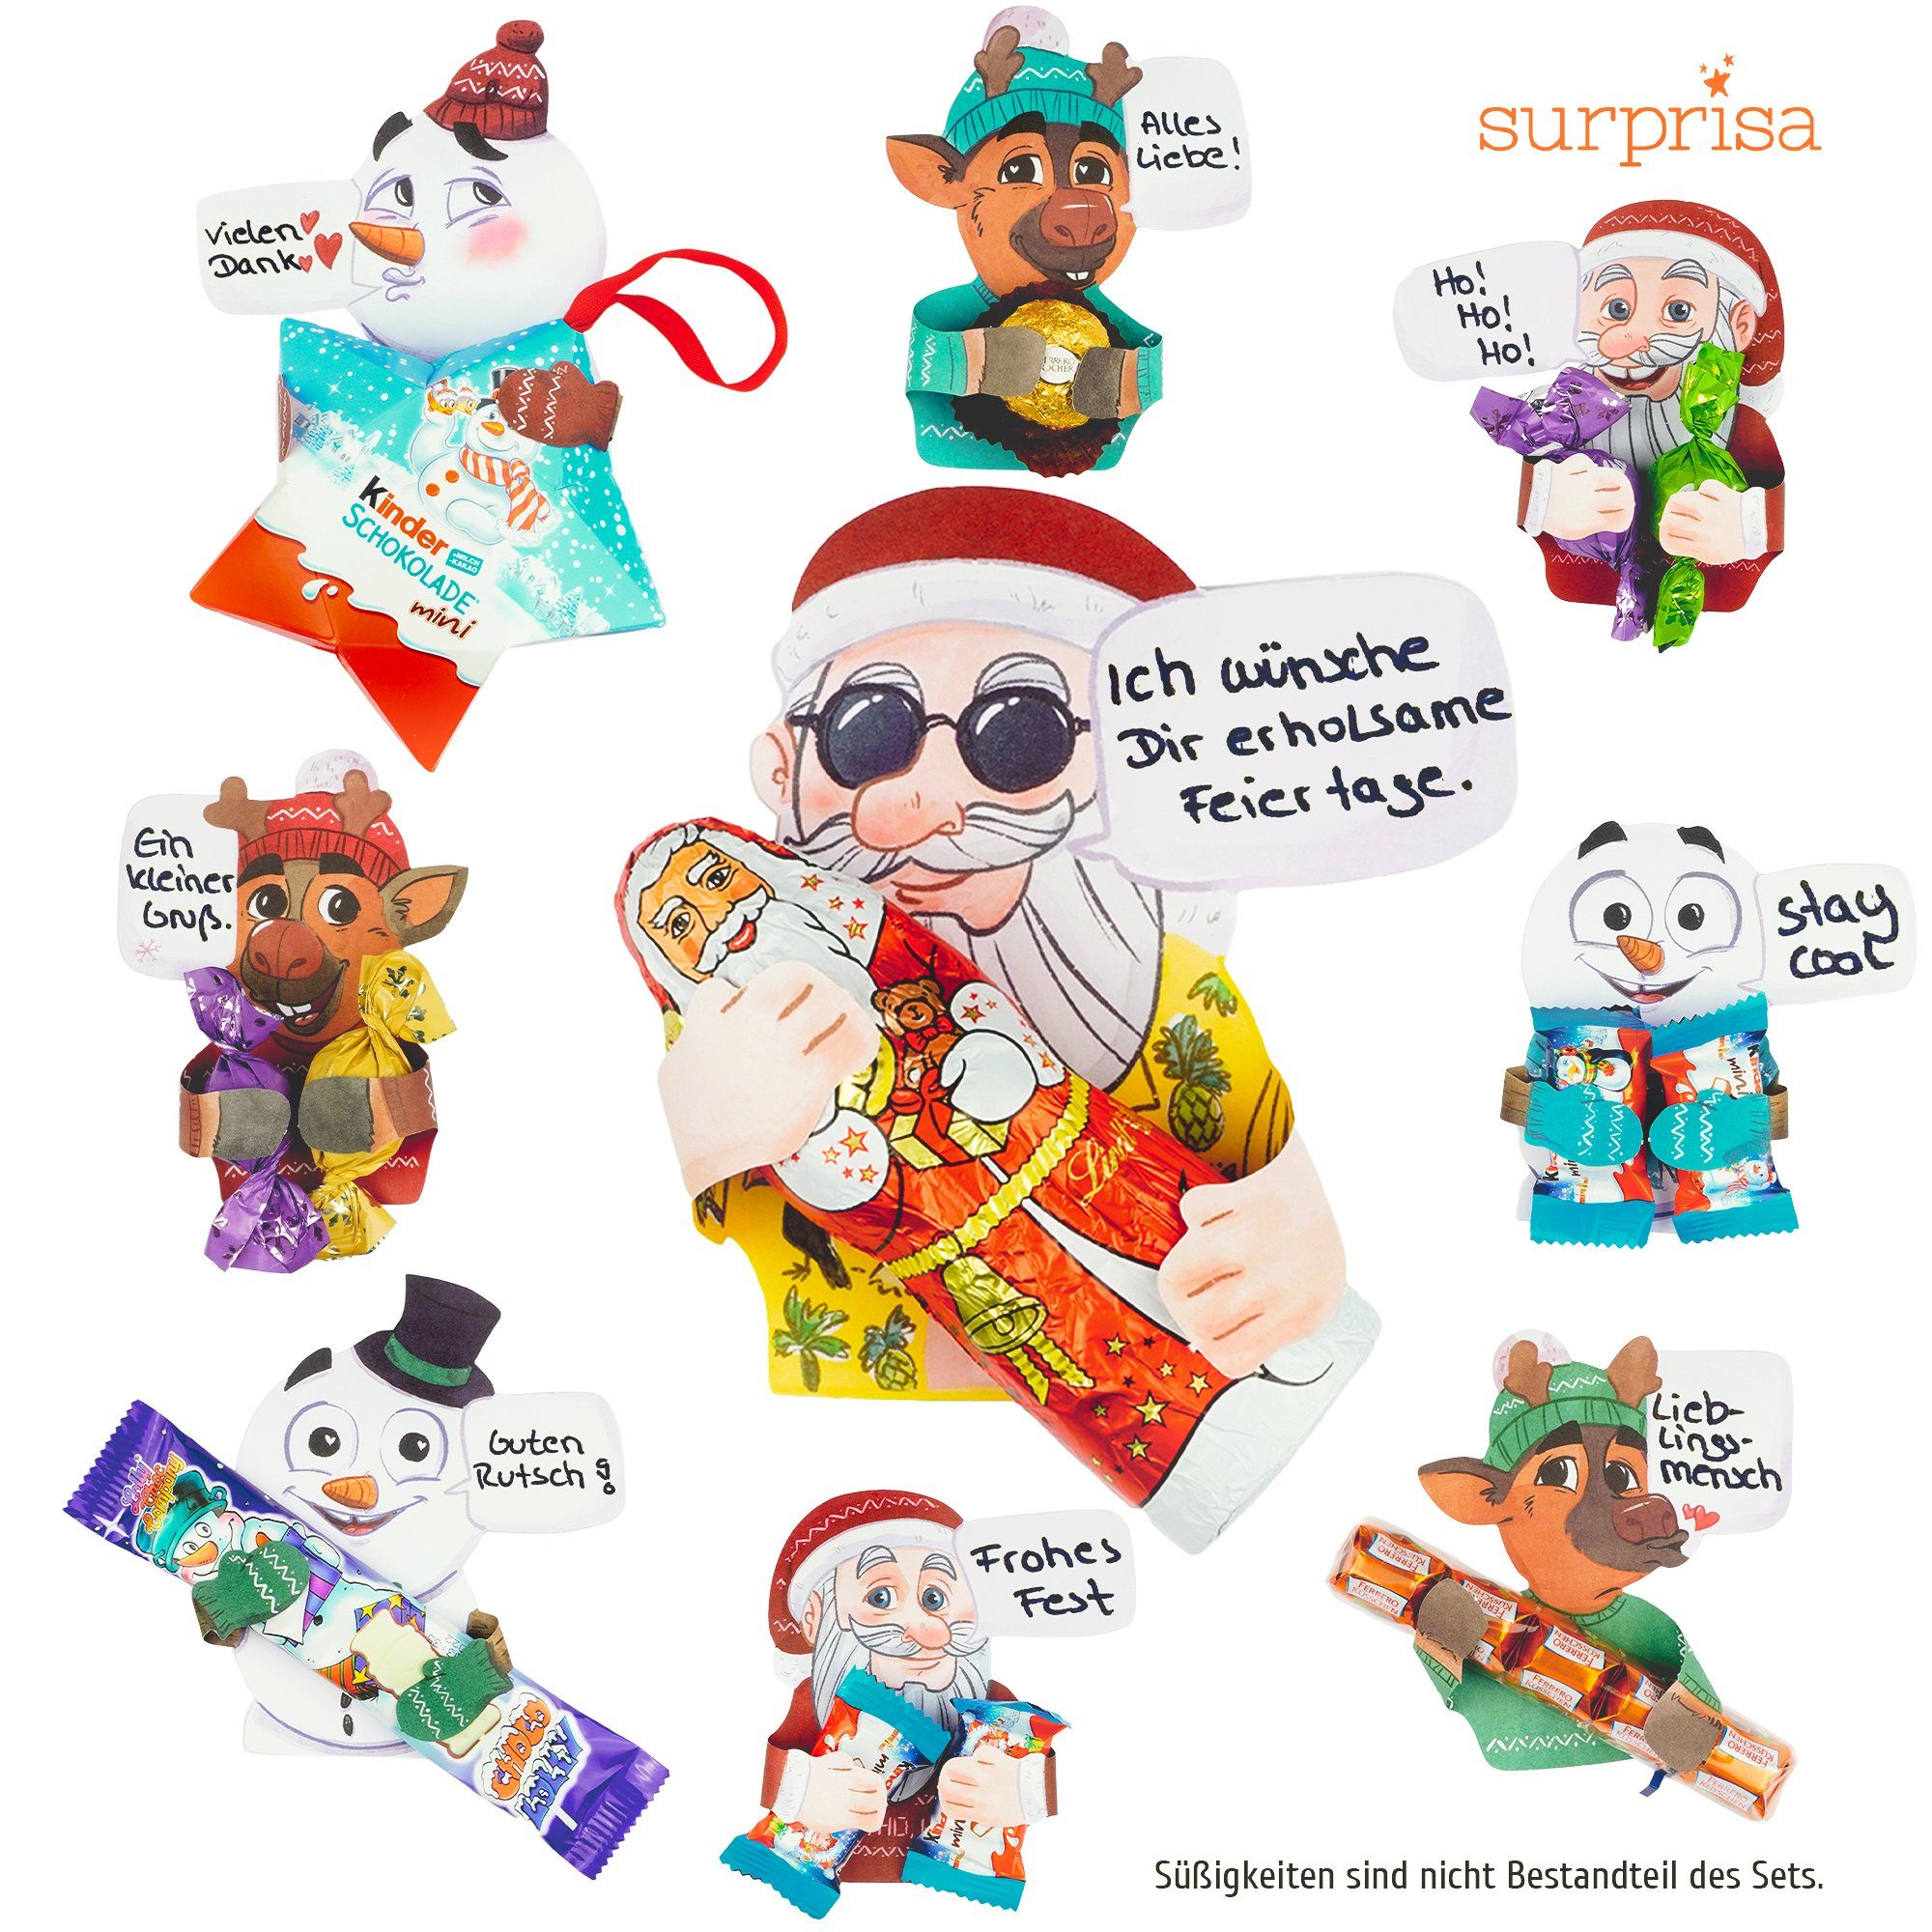 Geschenke zu Sweet andere mit Schokolade SURPRISA individuelle - persönlicher Geschenke, Weihnachten für und Hugs kleine Geschenkkarte Note für Grußkarte